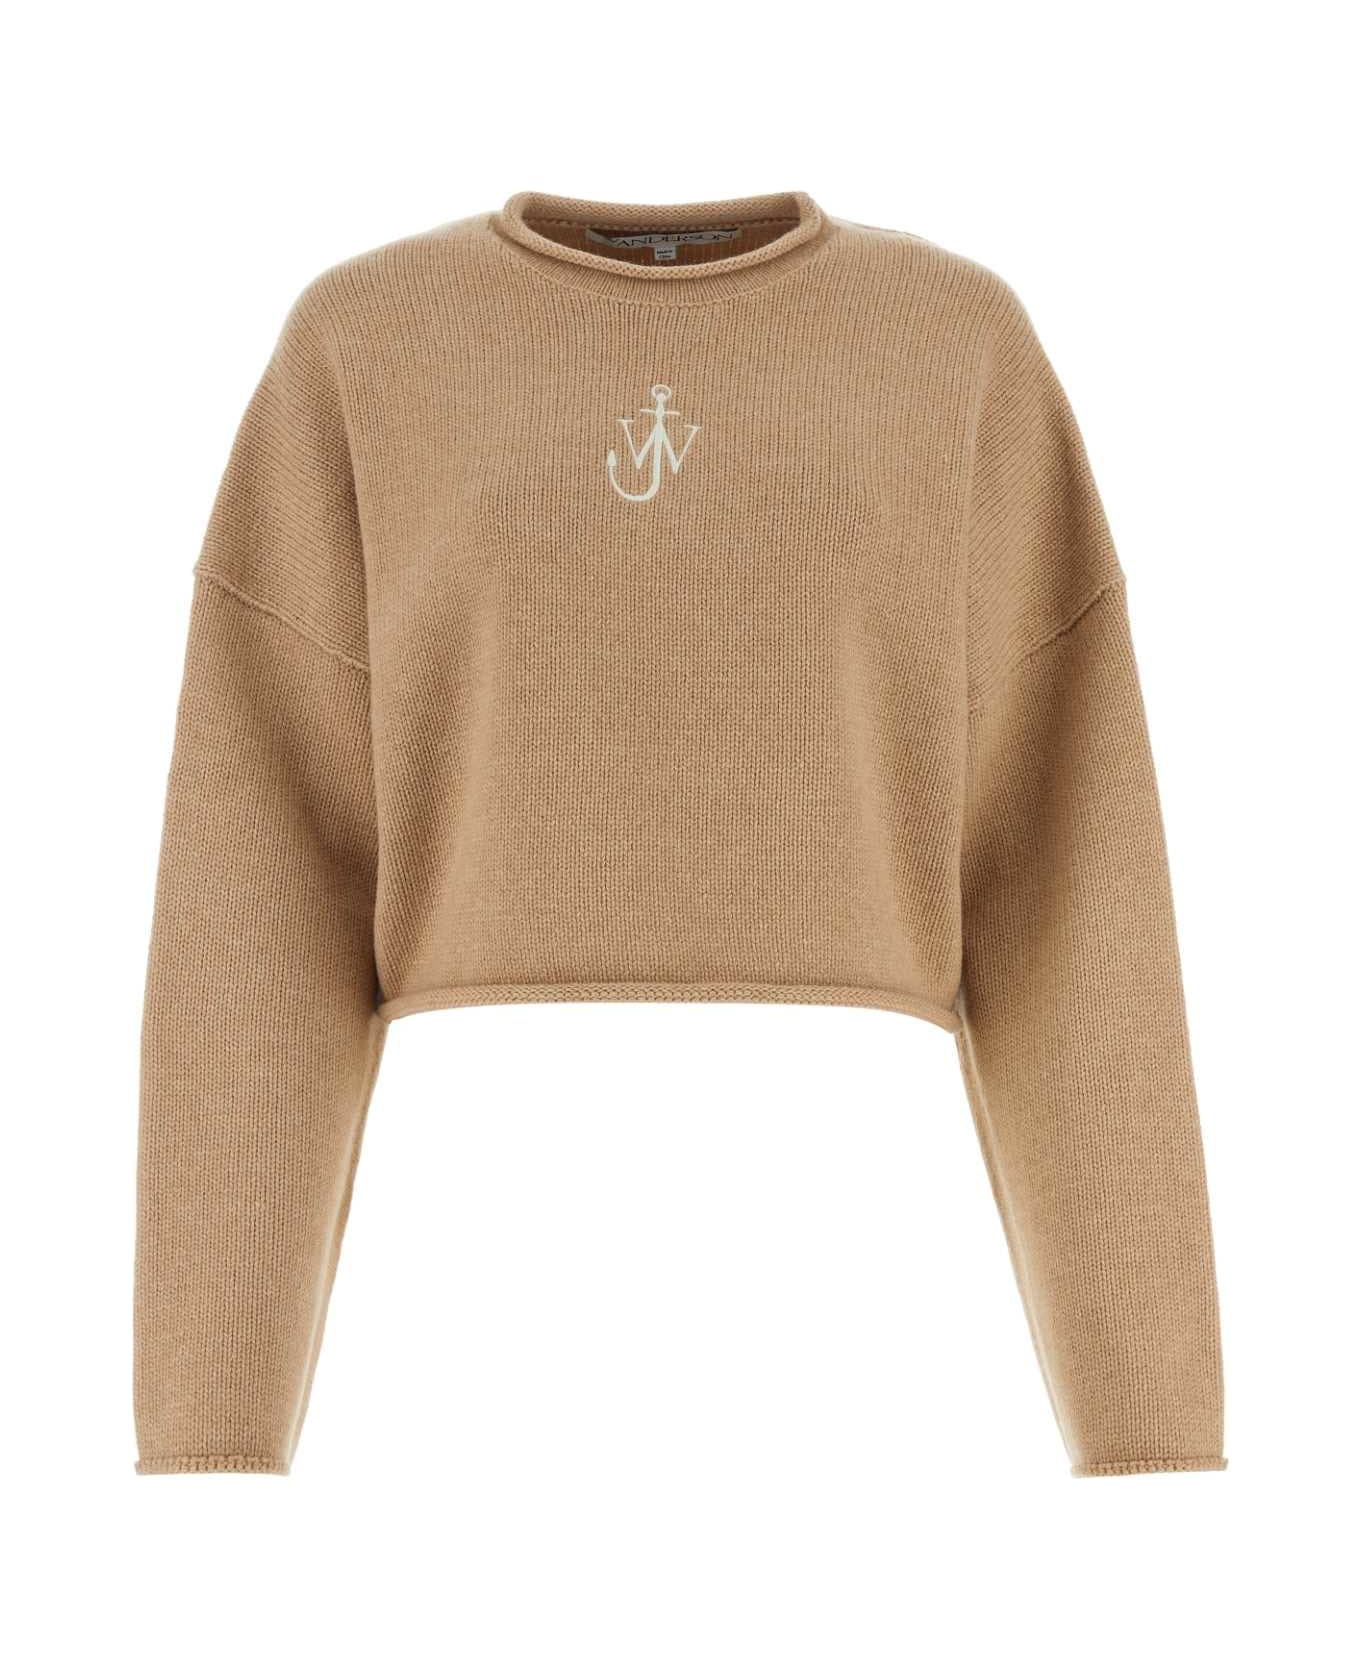 J.W. Anderson Camel Wool Blend Oversize Sweater - BEIGE